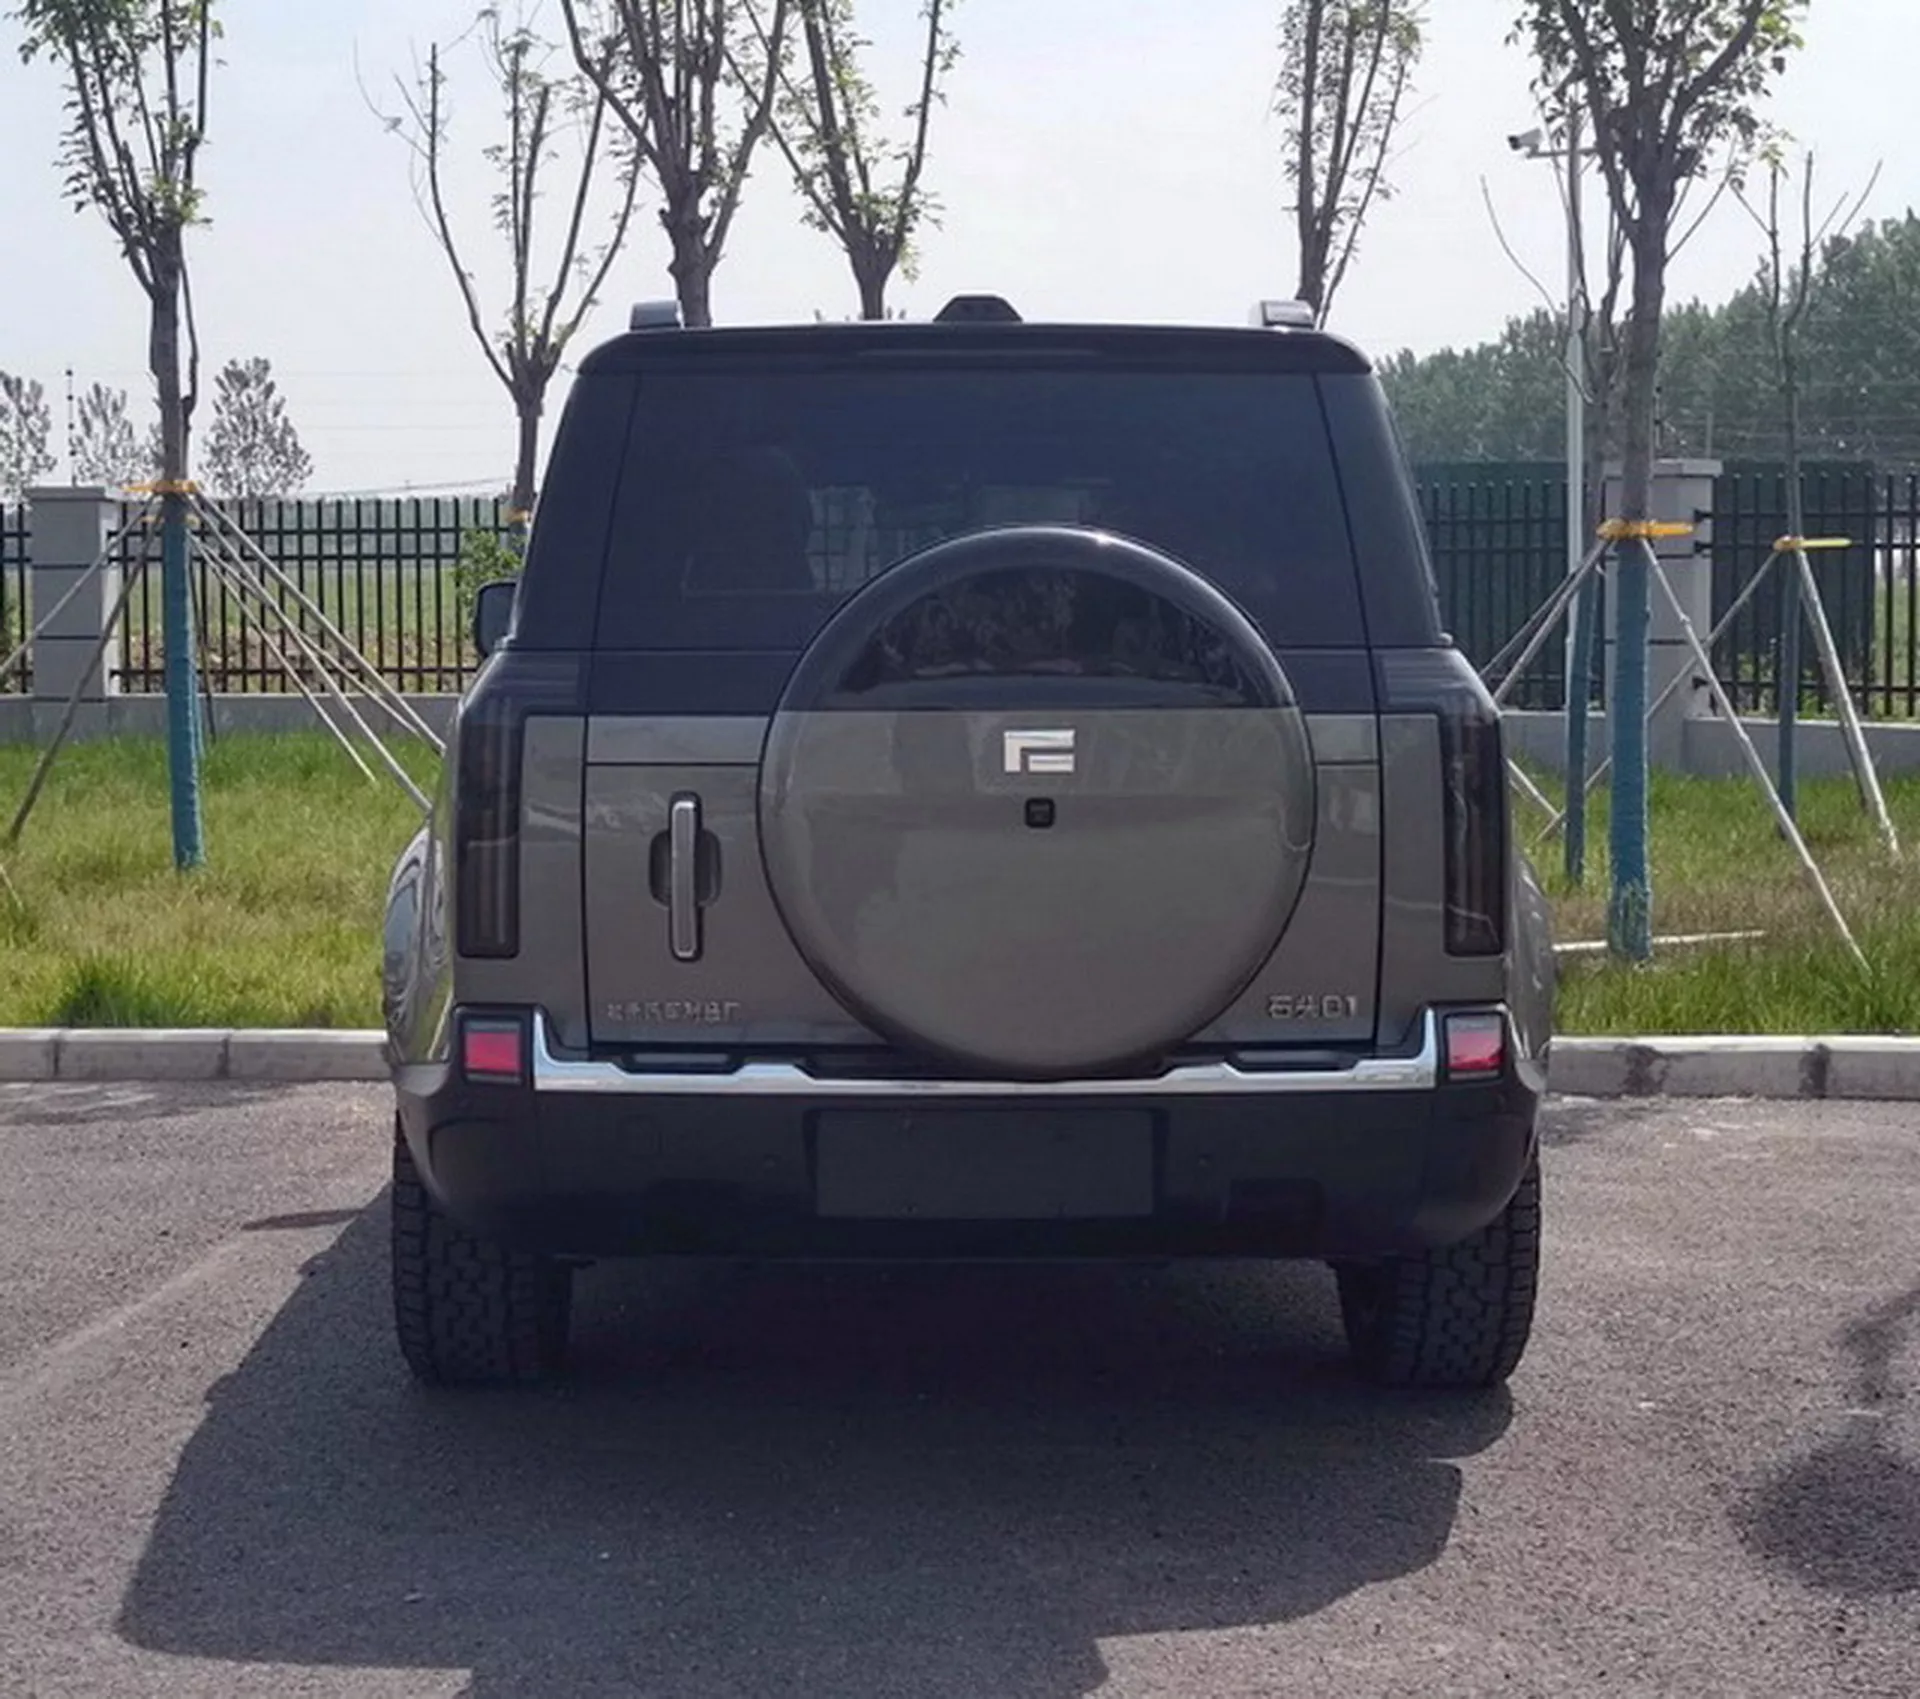 بايك الصينية تكشف عن SUV وعرة جديدة كلياً بتصميم مستوحى من ديفندر 2